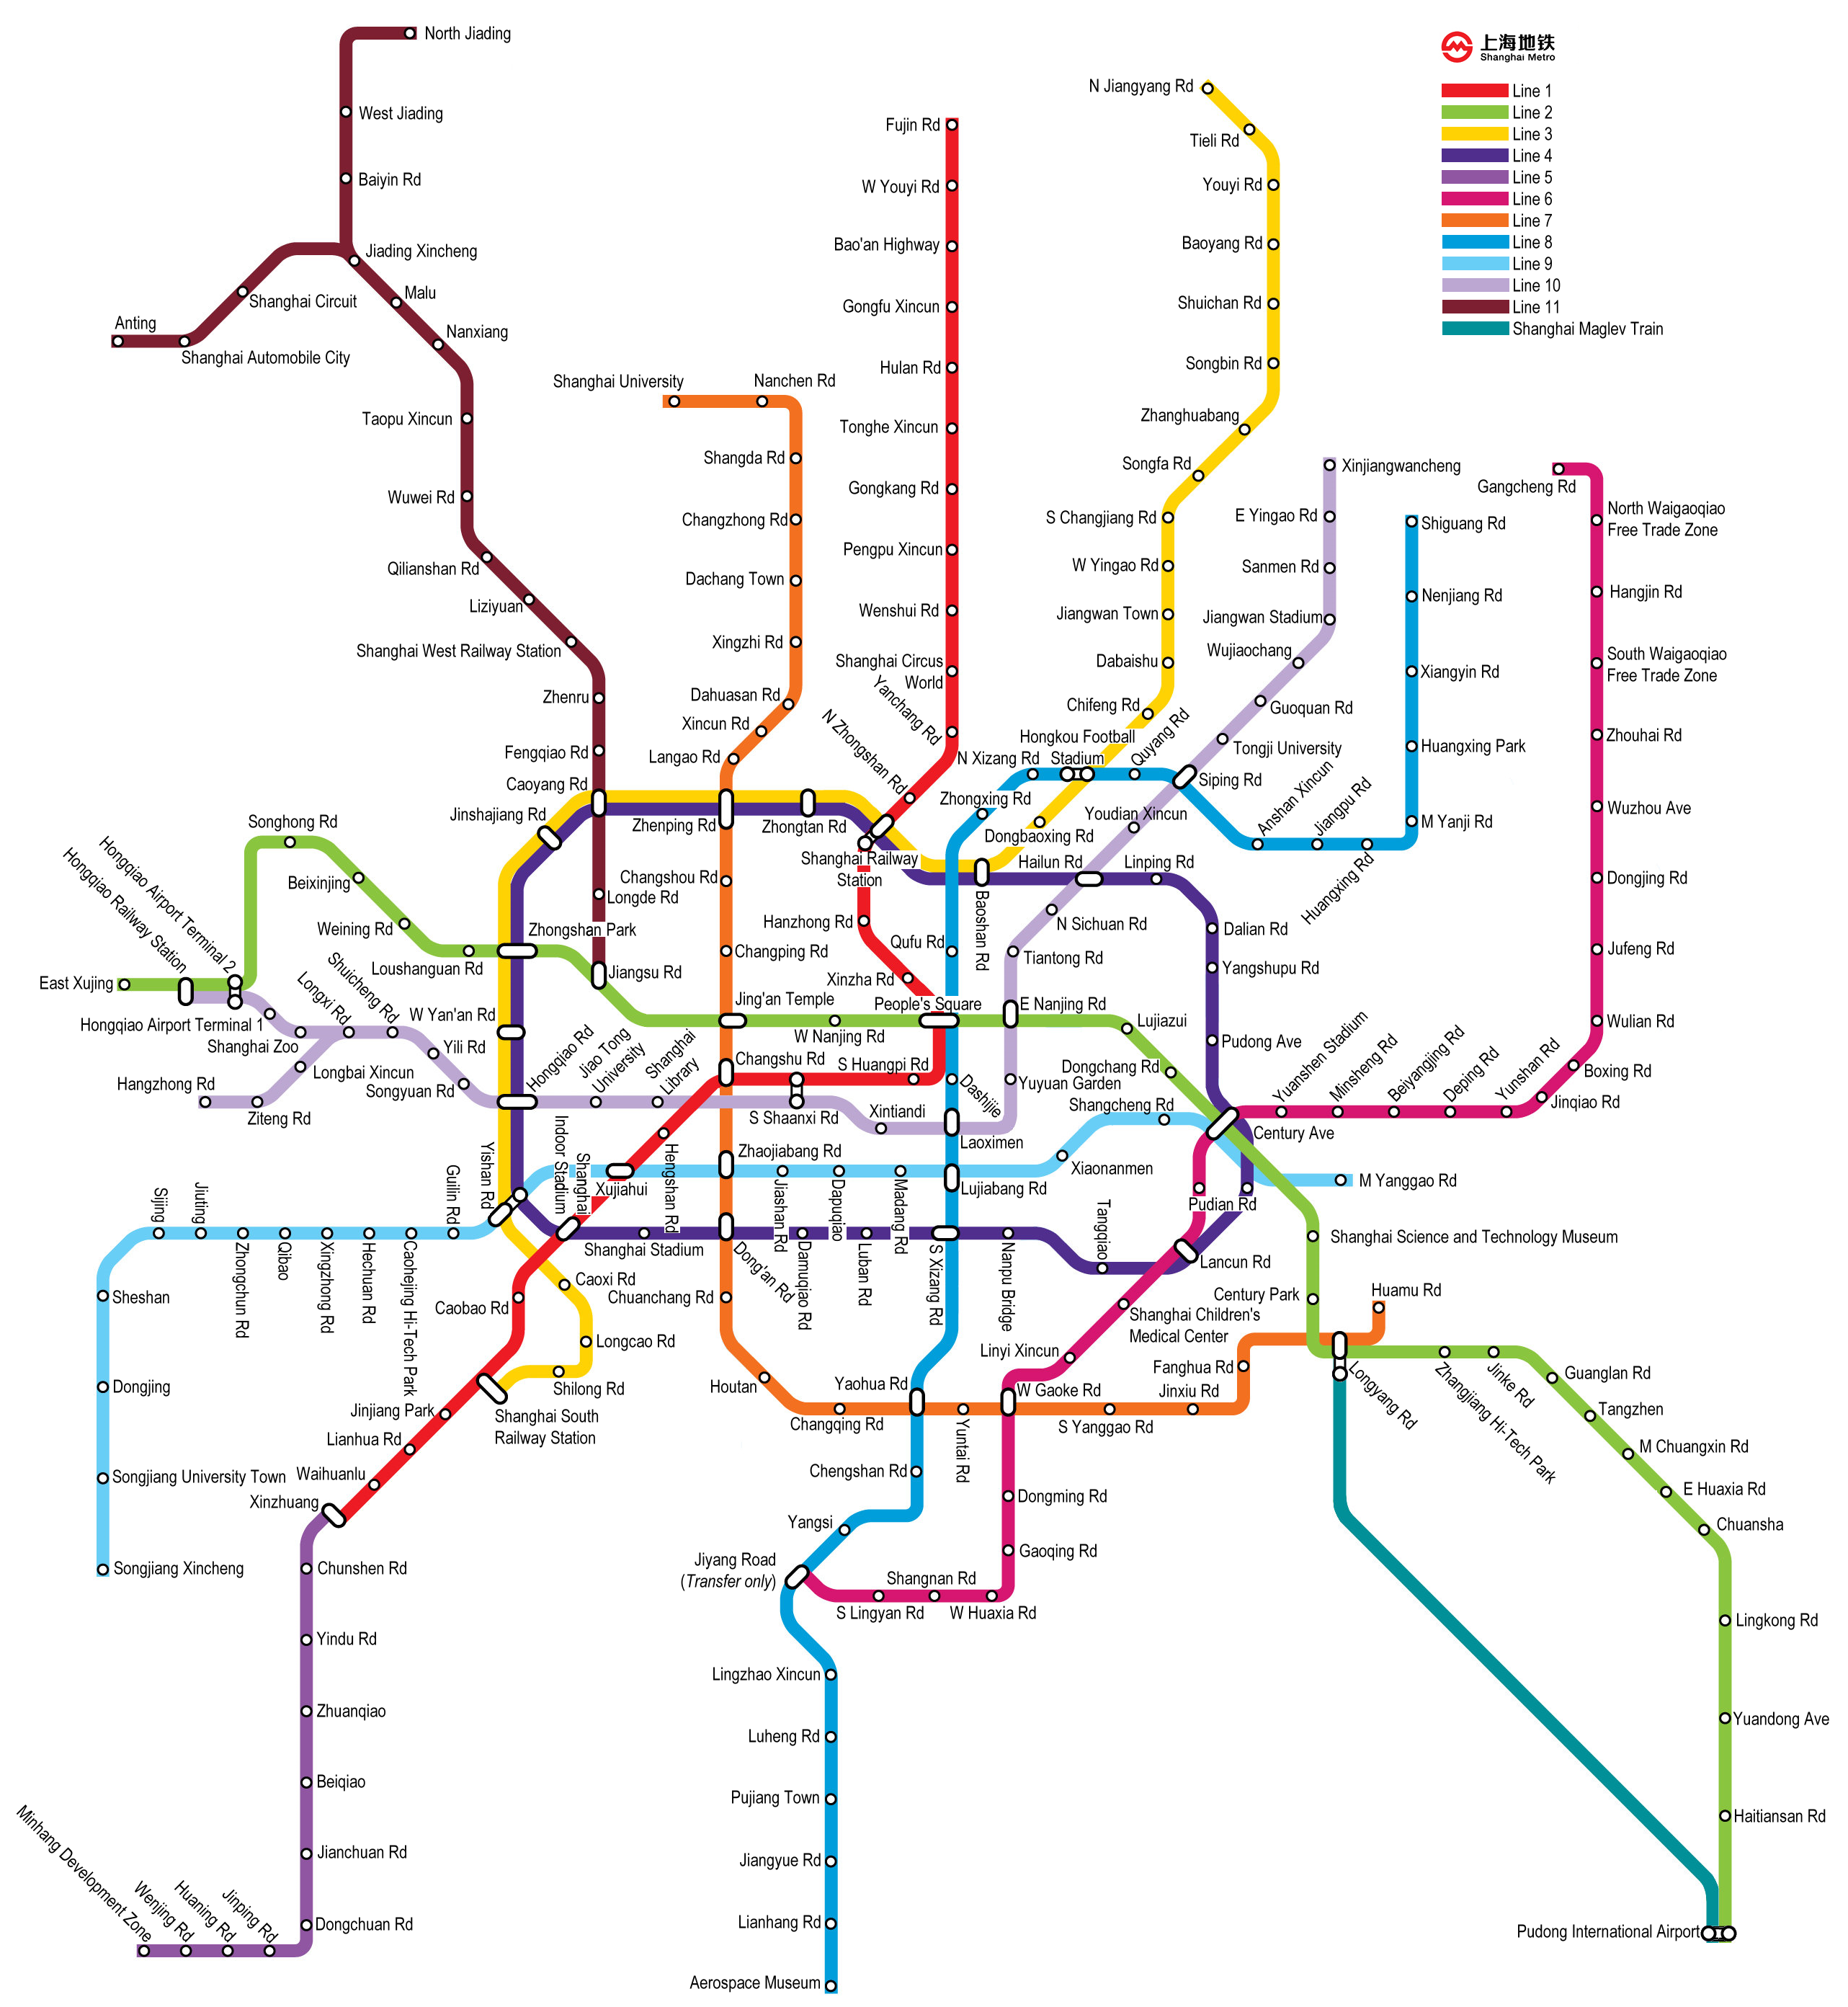 http://mapa-metro.com/mapas/Shanghai/mapa-metro-shangai.png